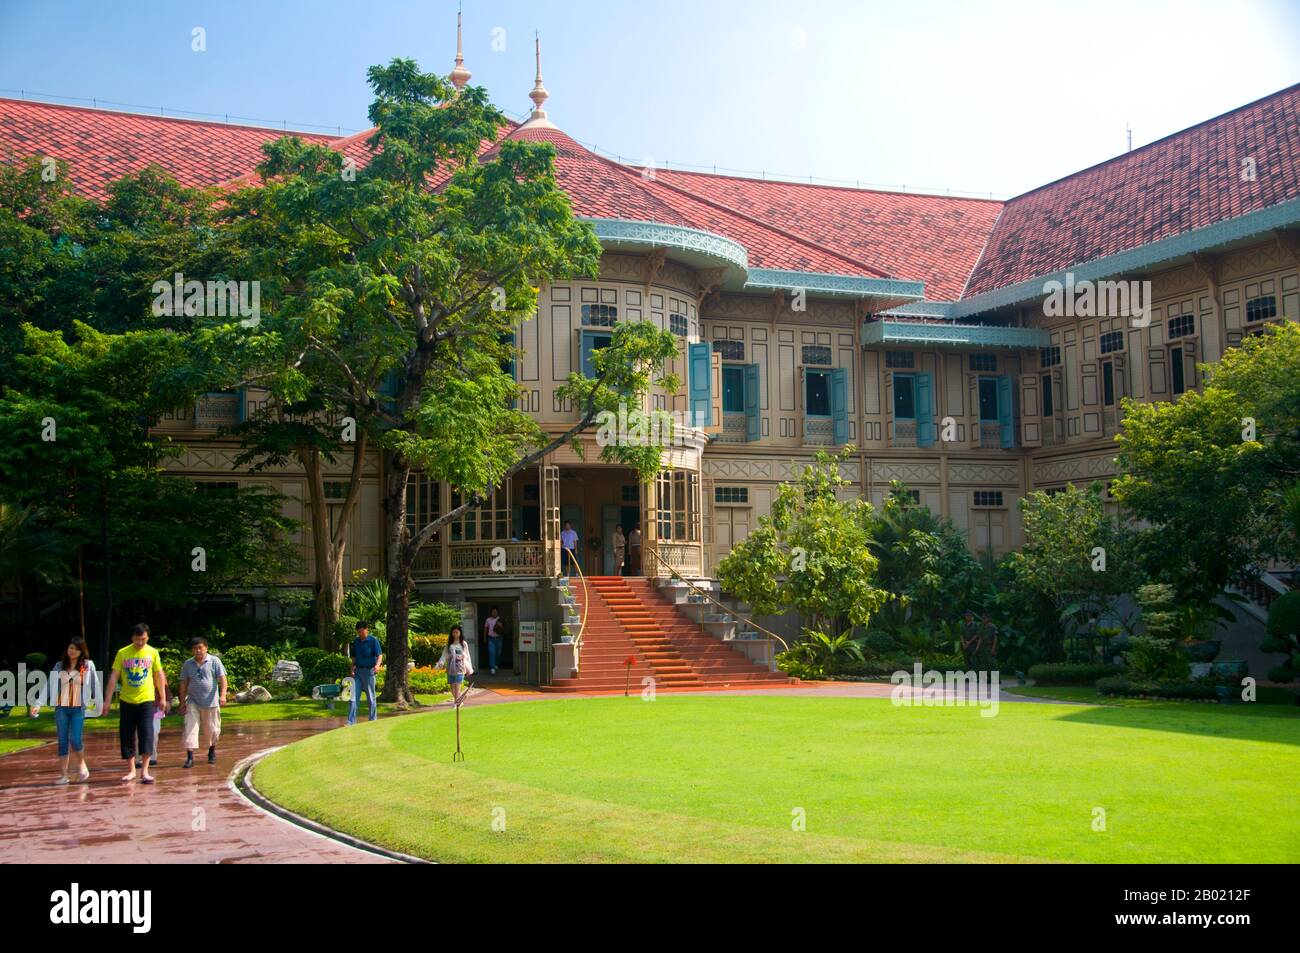 Le Vimanmek Mansion est un ancien palais royal et est également connu sous le nom de Vimanmek Teak Mansion ou Vimanmek Palace. Vimanmek Mansion a été construit en 1900 par le roi Rama V (roi Chulalongkorn) en ayant la résidence Munthatu Rattanaroj à Chuthathhuj Rachatha à Ko Sichang, Chonburi, démonté et remonté à Dusit Garden. Il a été achevé le 27 mars 1901 et utilisé comme palais royal par le roi Rama V pendant cinq ans. En 1982, la reine Sirikit a demandé la permission du roi Rama IX (Bhumibol Adulyadej) de rénover le palais Vimanmek pour l'utiliser comme musée pour commémorer le roi Rama V en présentant ses photos, pe Banque D'Images